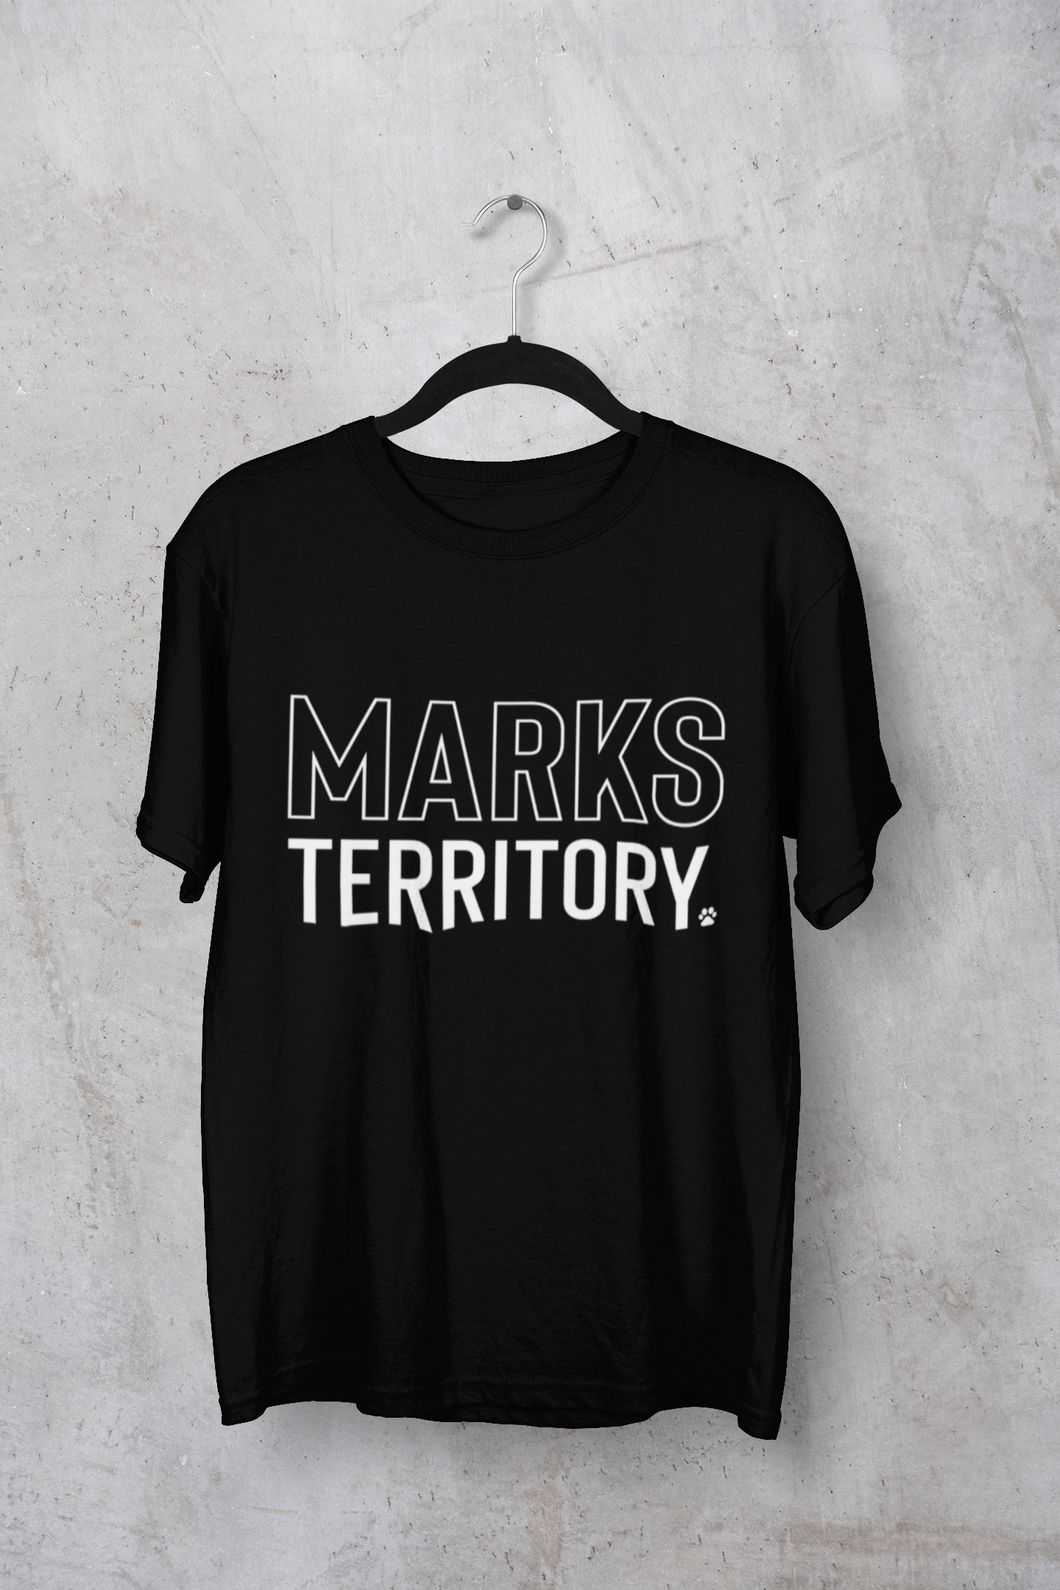 Marks Territory Men's/Unisex or Women's T-shirt